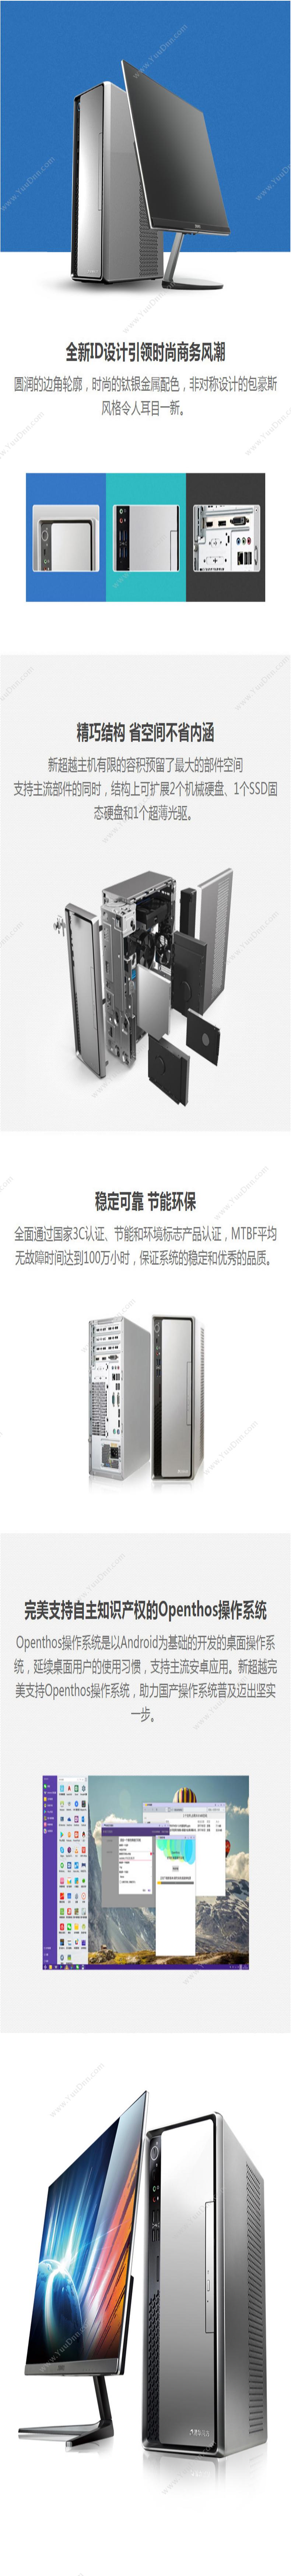 清华同方 TongFang 超扬A8500-0036（21.5寸显示器） 台式机 台式电脑套机